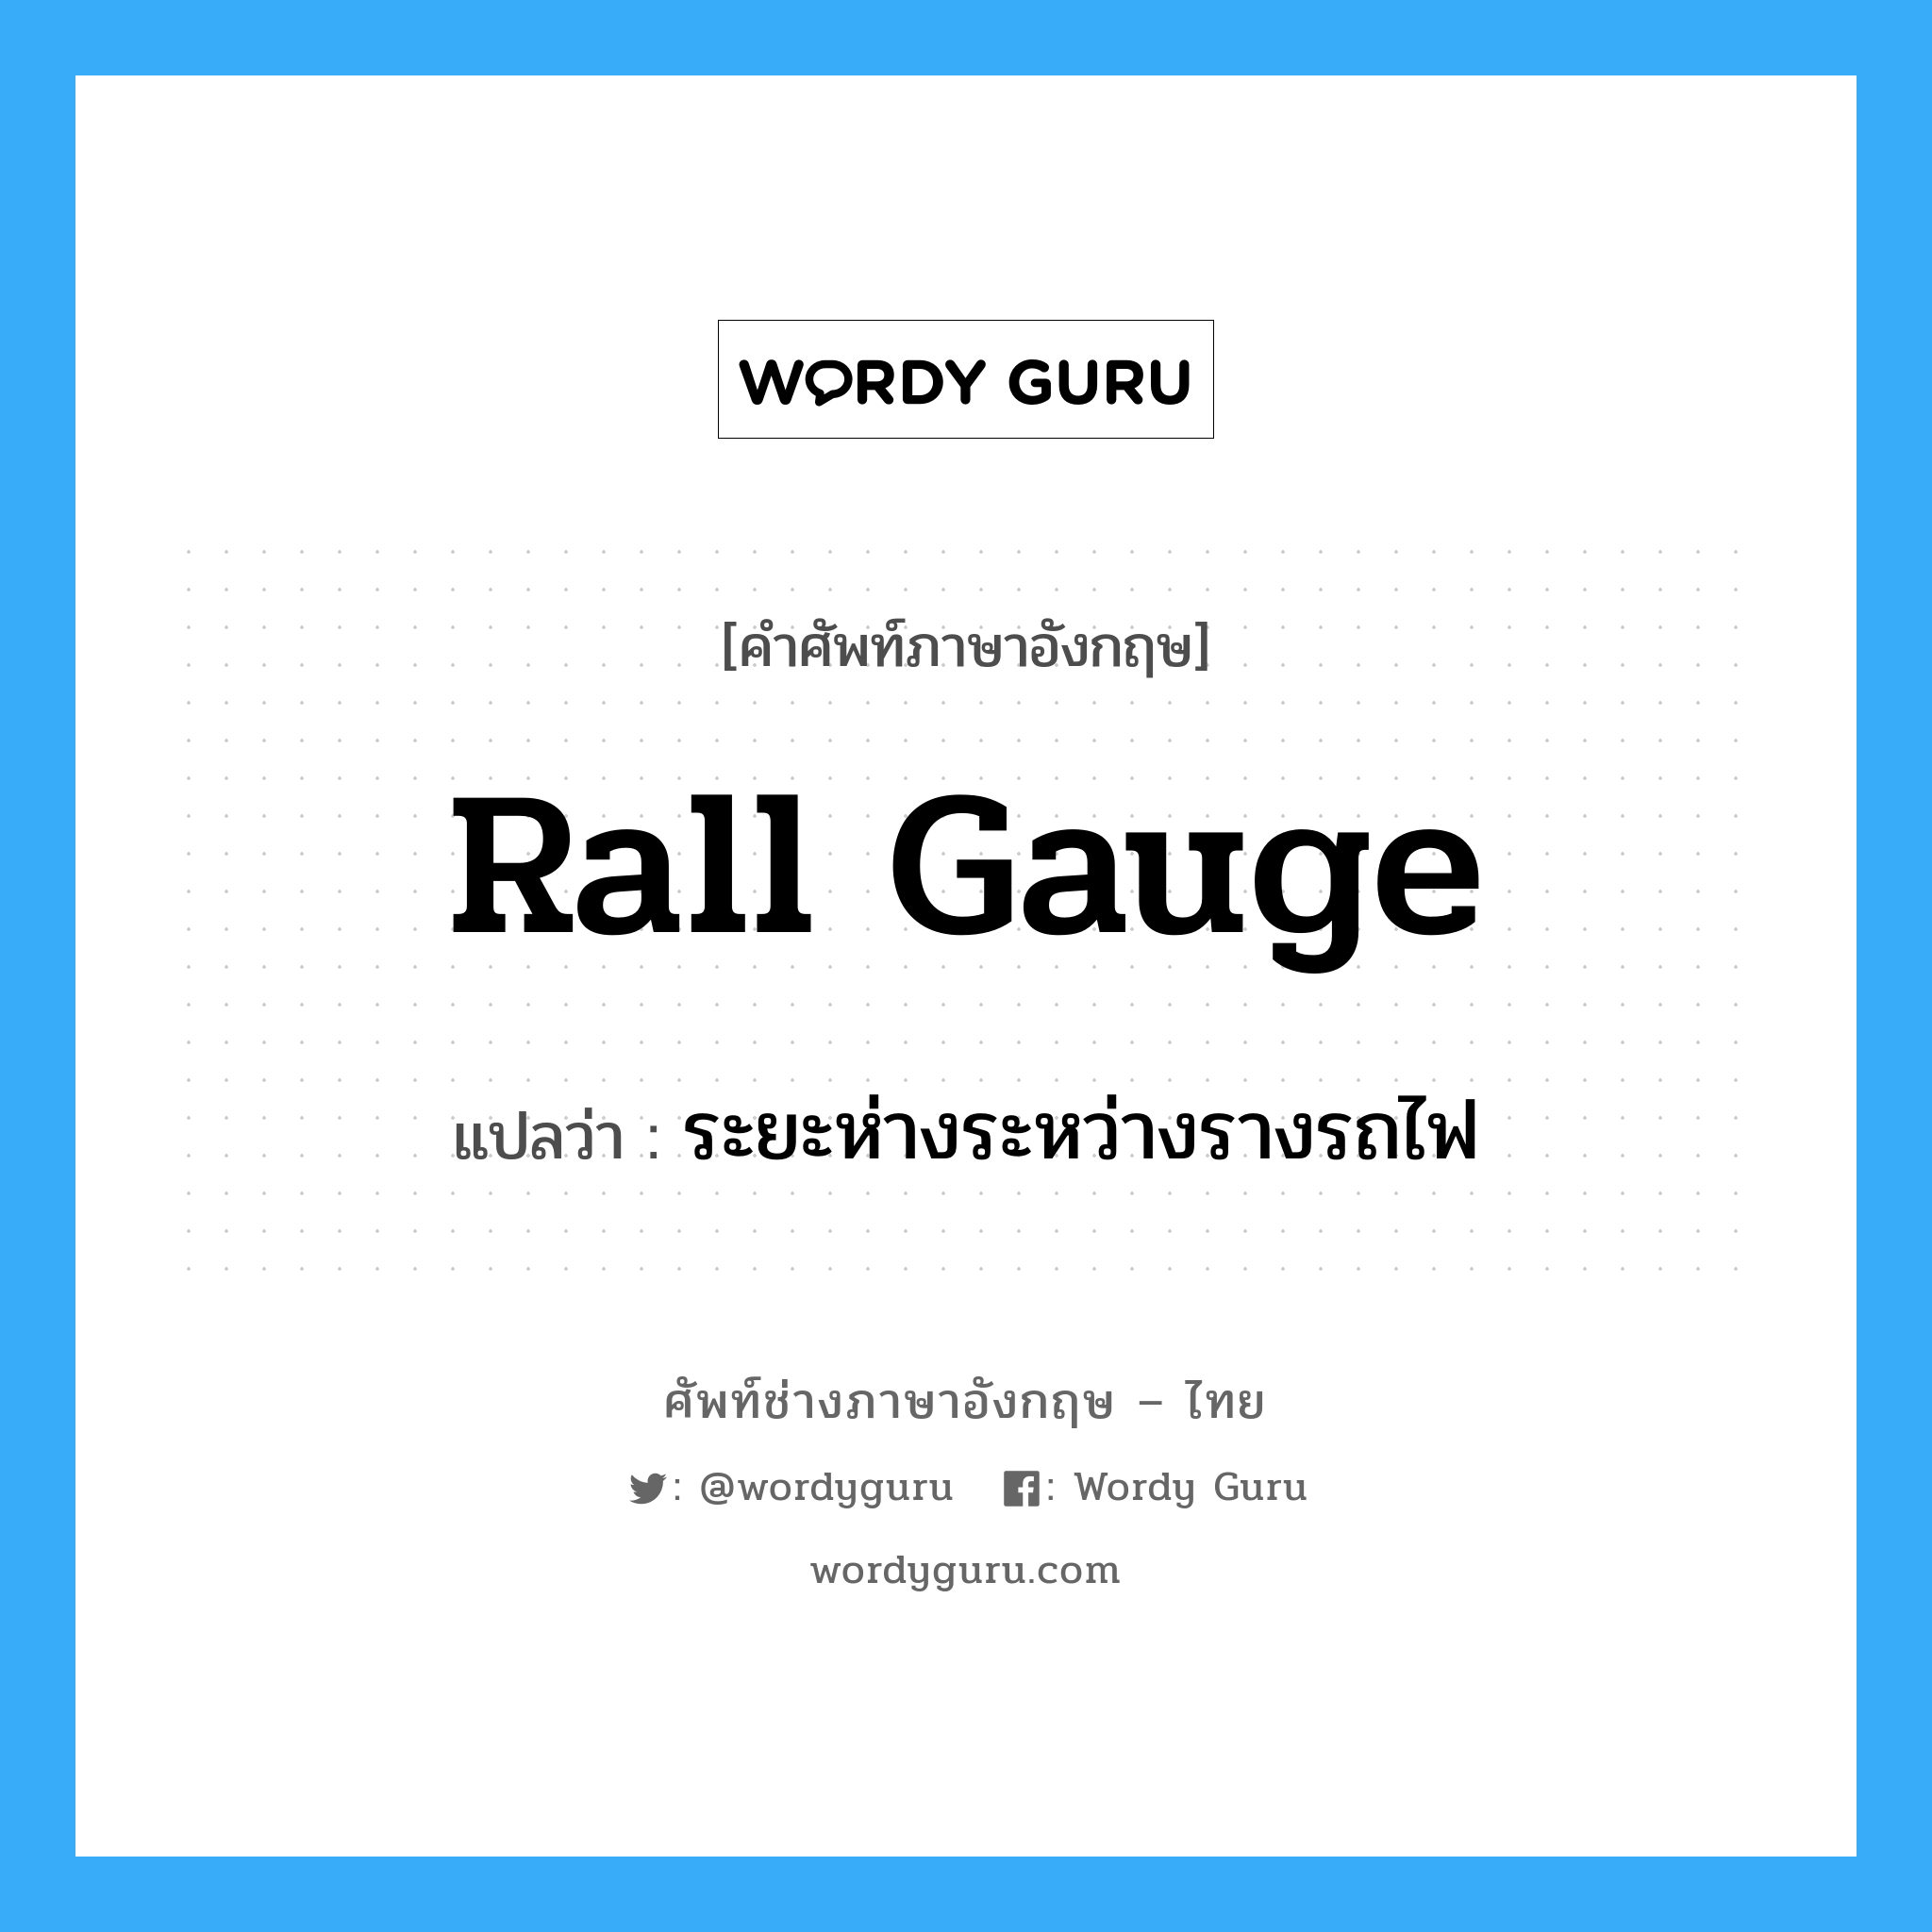 rall gauge แปลว่า?, คำศัพท์ช่างภาษาอังกฤษ - ไทย rall gauge คำศัพท์ภาษาอังกฤษ rall gauge แปลว่า ระยะห่างระหว่างรางรถไฟ